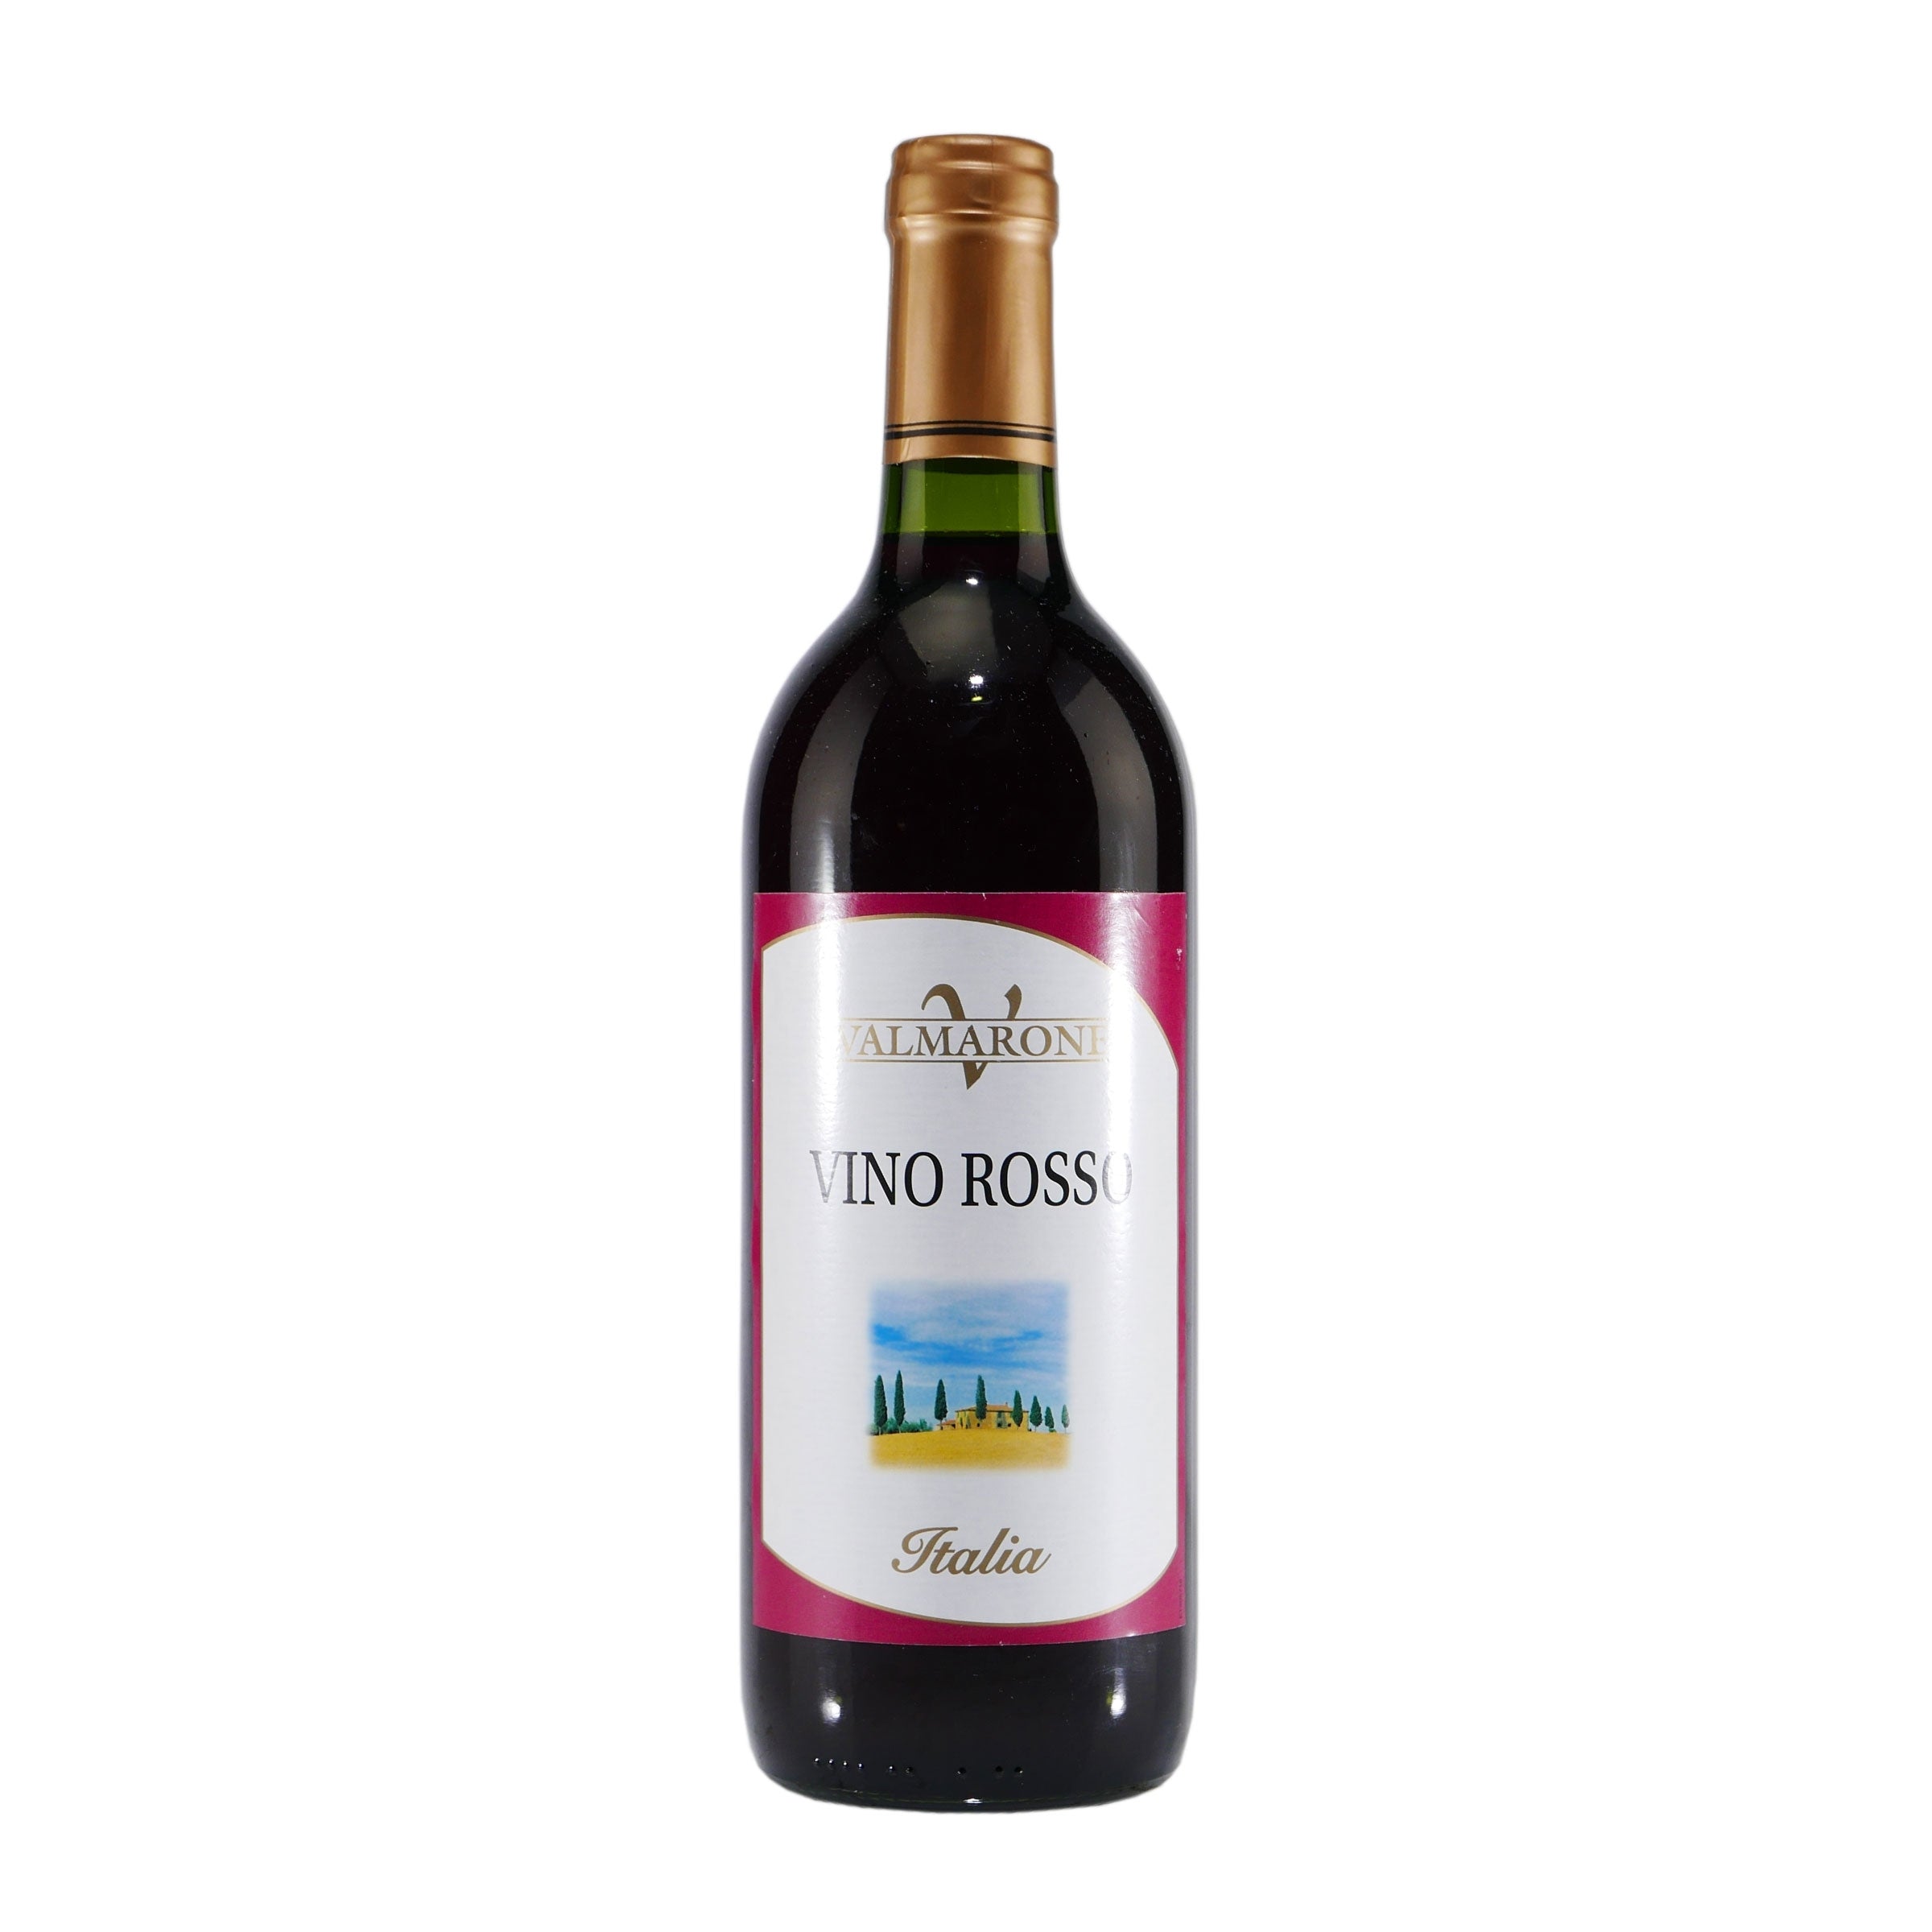 Valmarone Vino Rosso - Italienischer Rotwein (6x0,75L)